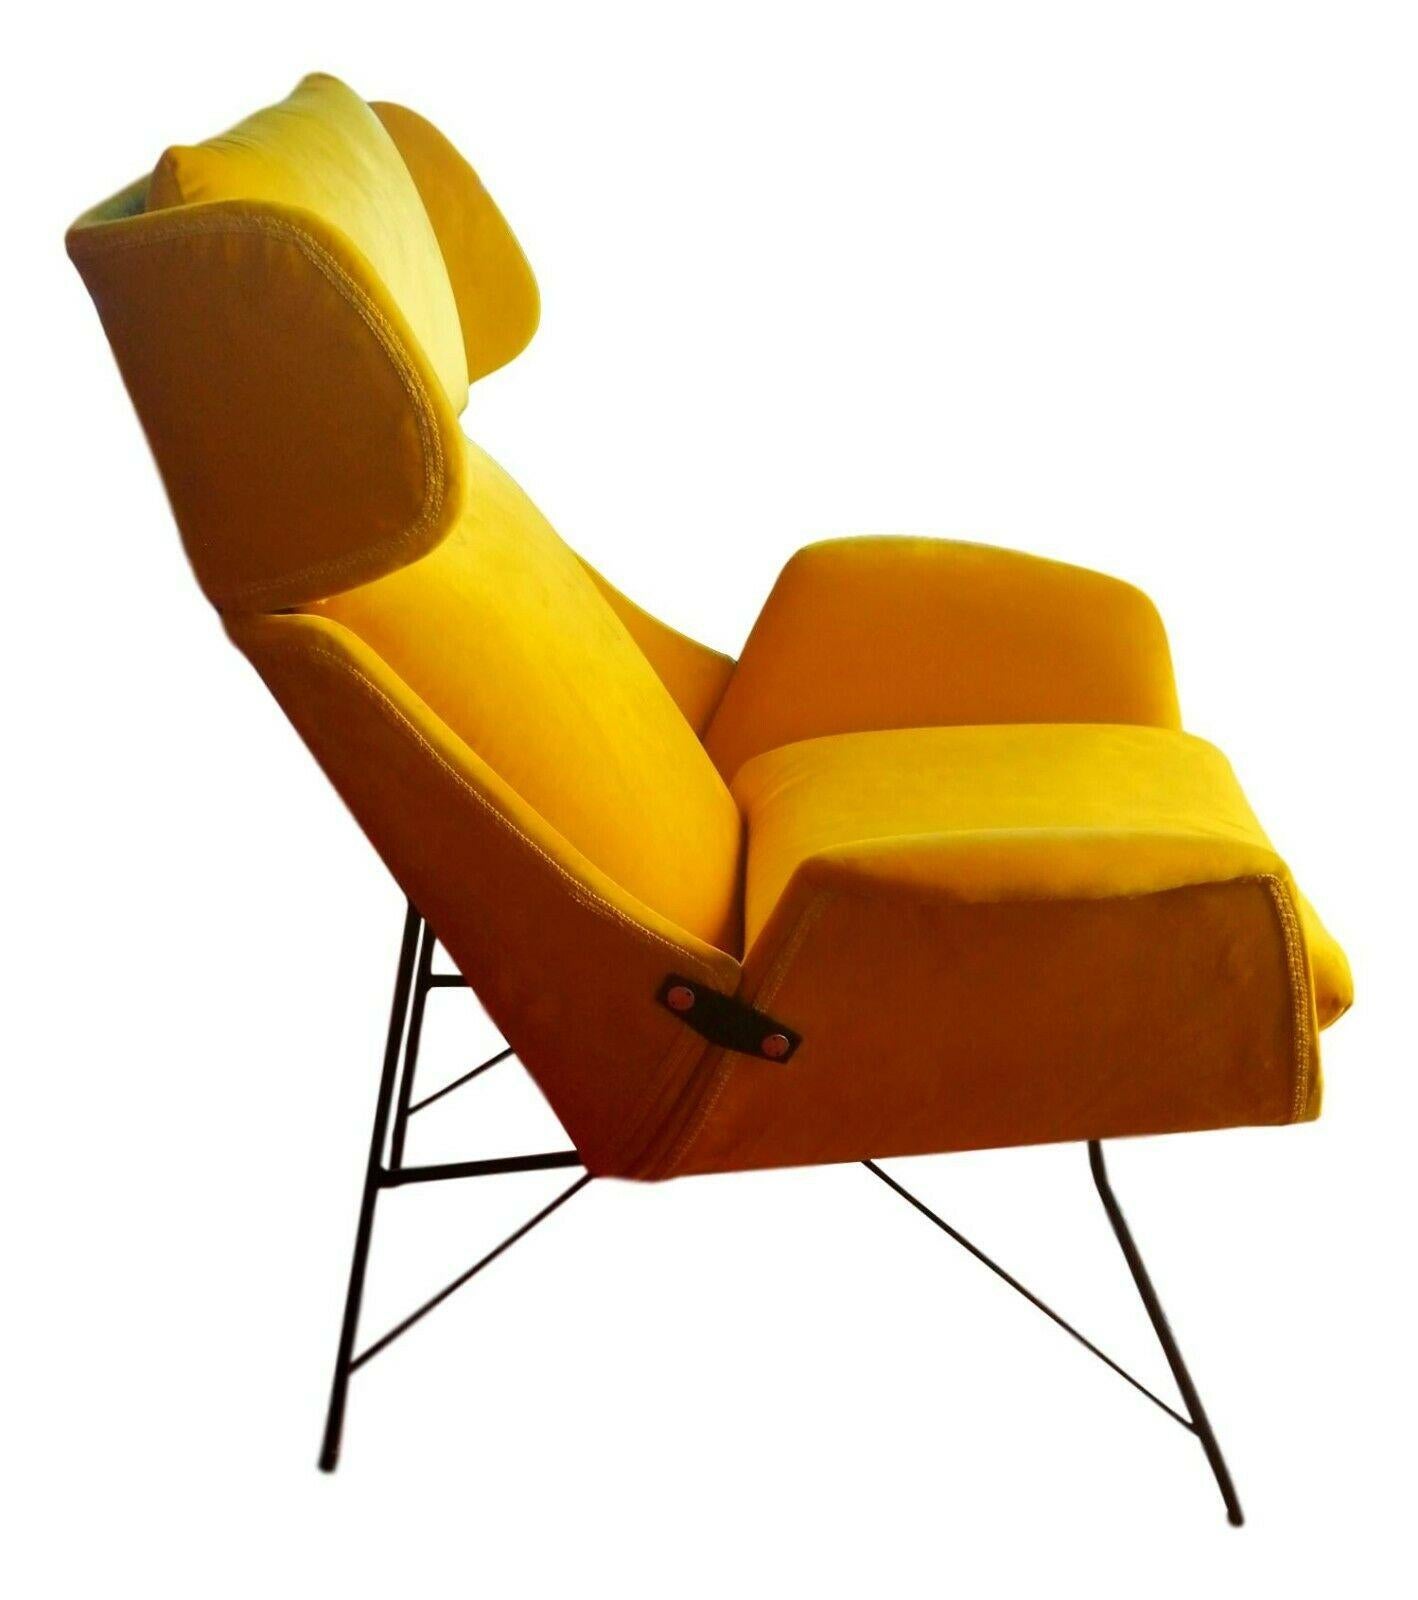 seltener prächtiger Sessel, entworfen von Augusto Bozzi für Saporiti, Anfang der 1950er Jahre.

dreiteilige gebogene Sperrholzstruktur auf schwarz lackiertem Metallrahmen

schaumstoffpolsterung und Kissen, gelber Samtbezug

er misst knapp 110